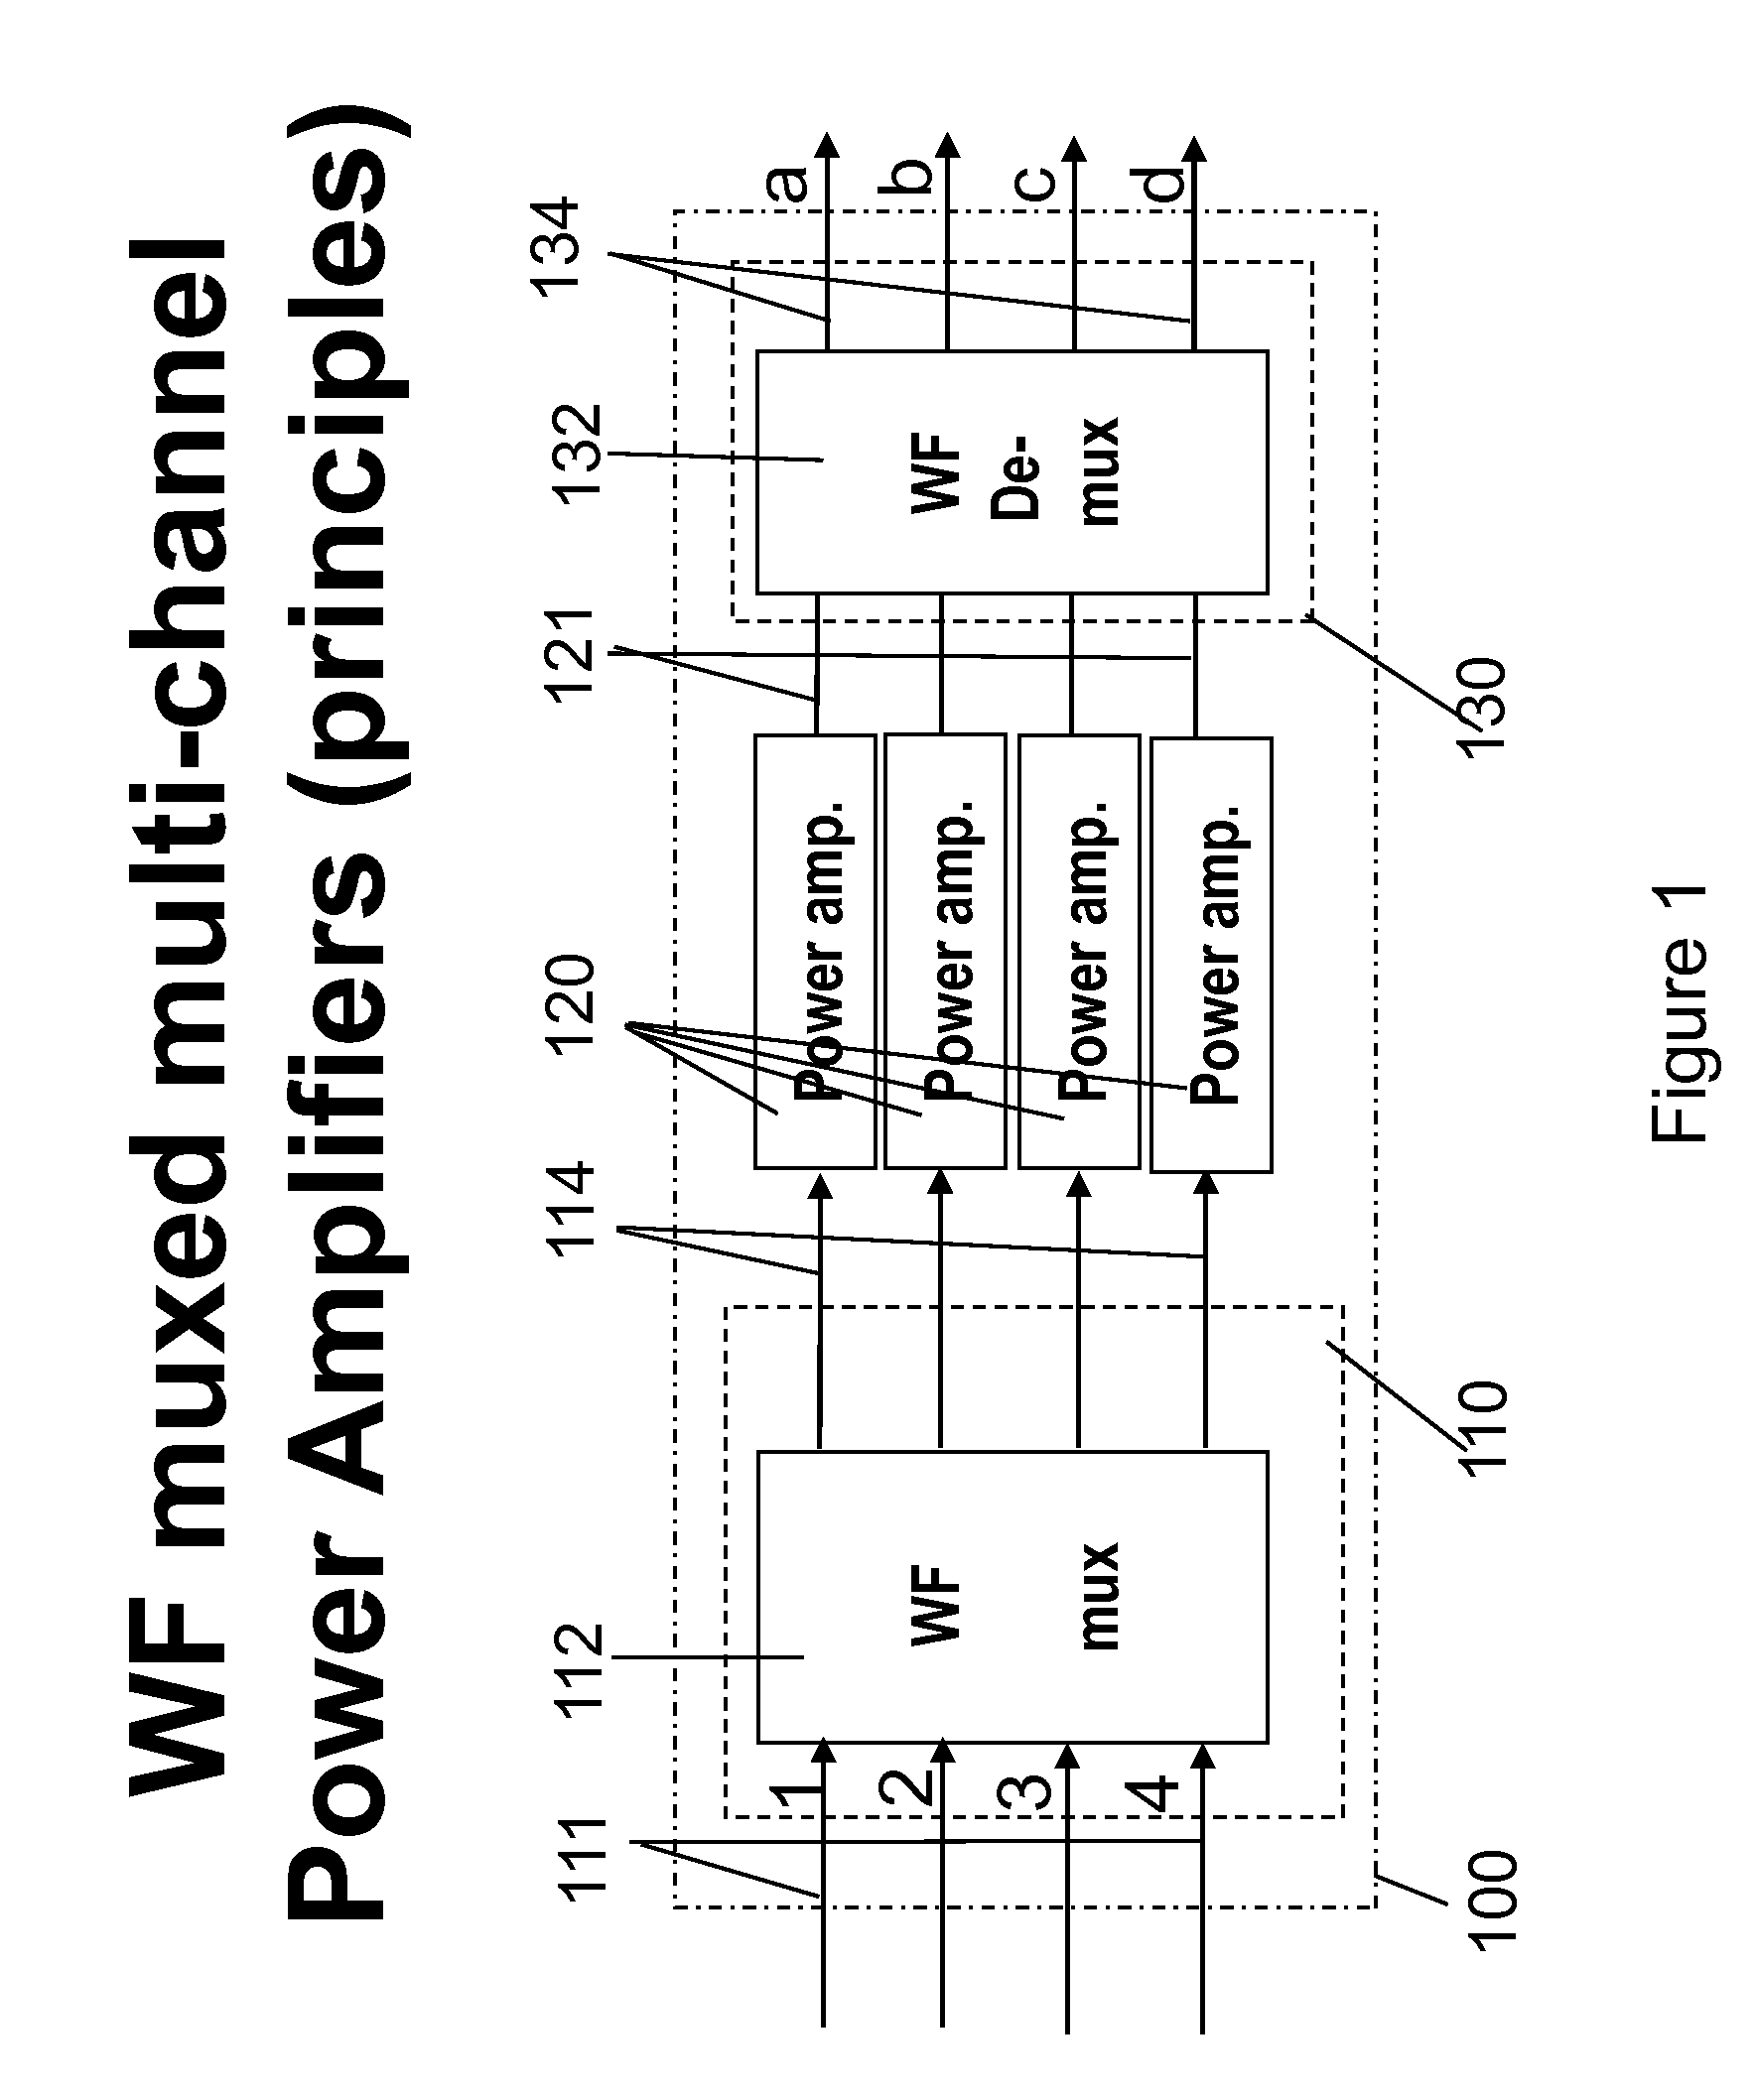 Flexible multi-channel amplifiers via wavefront muxing techniques